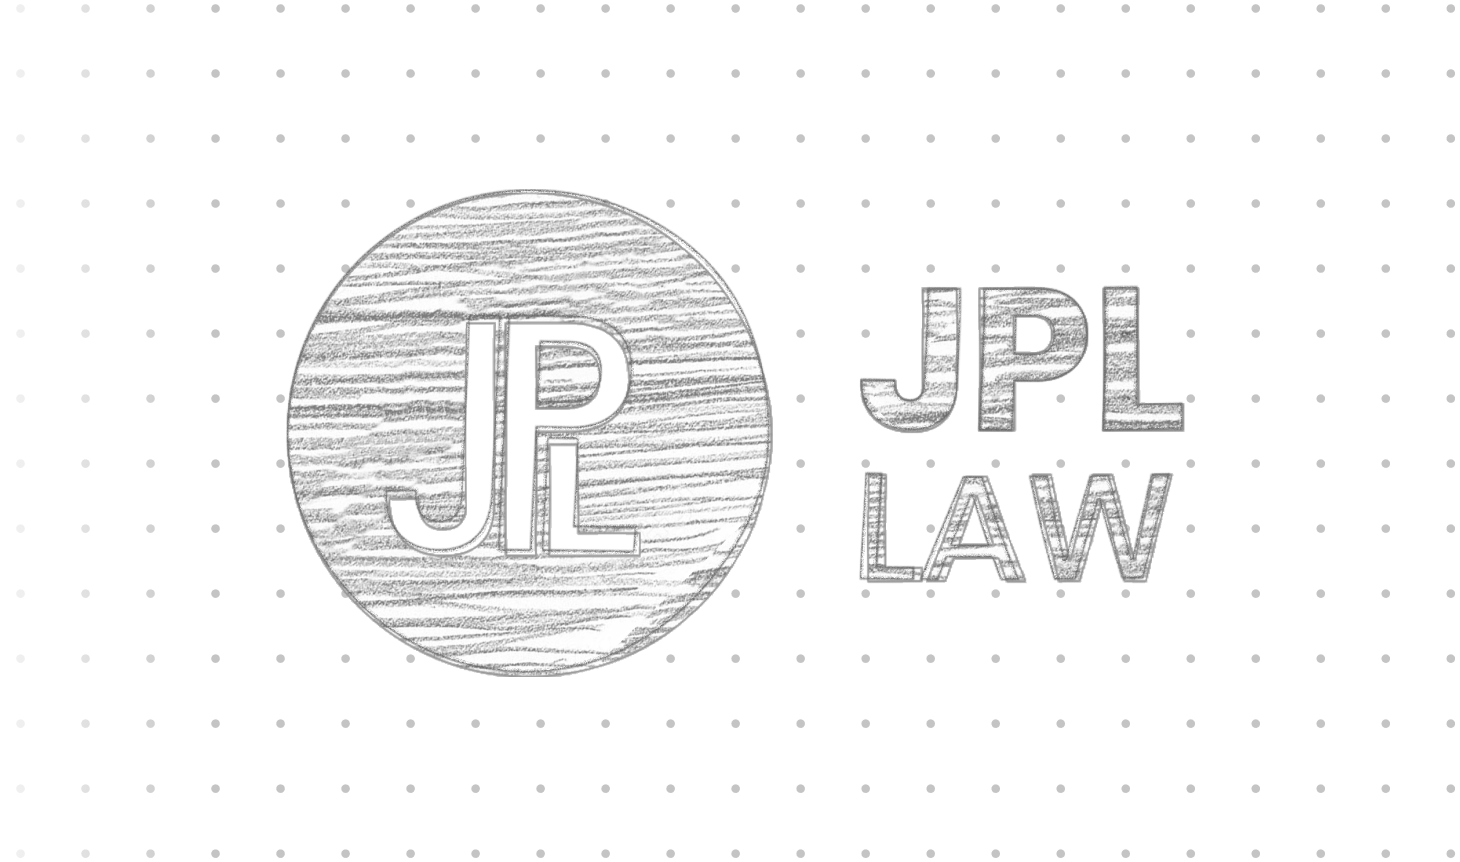 JPL Law